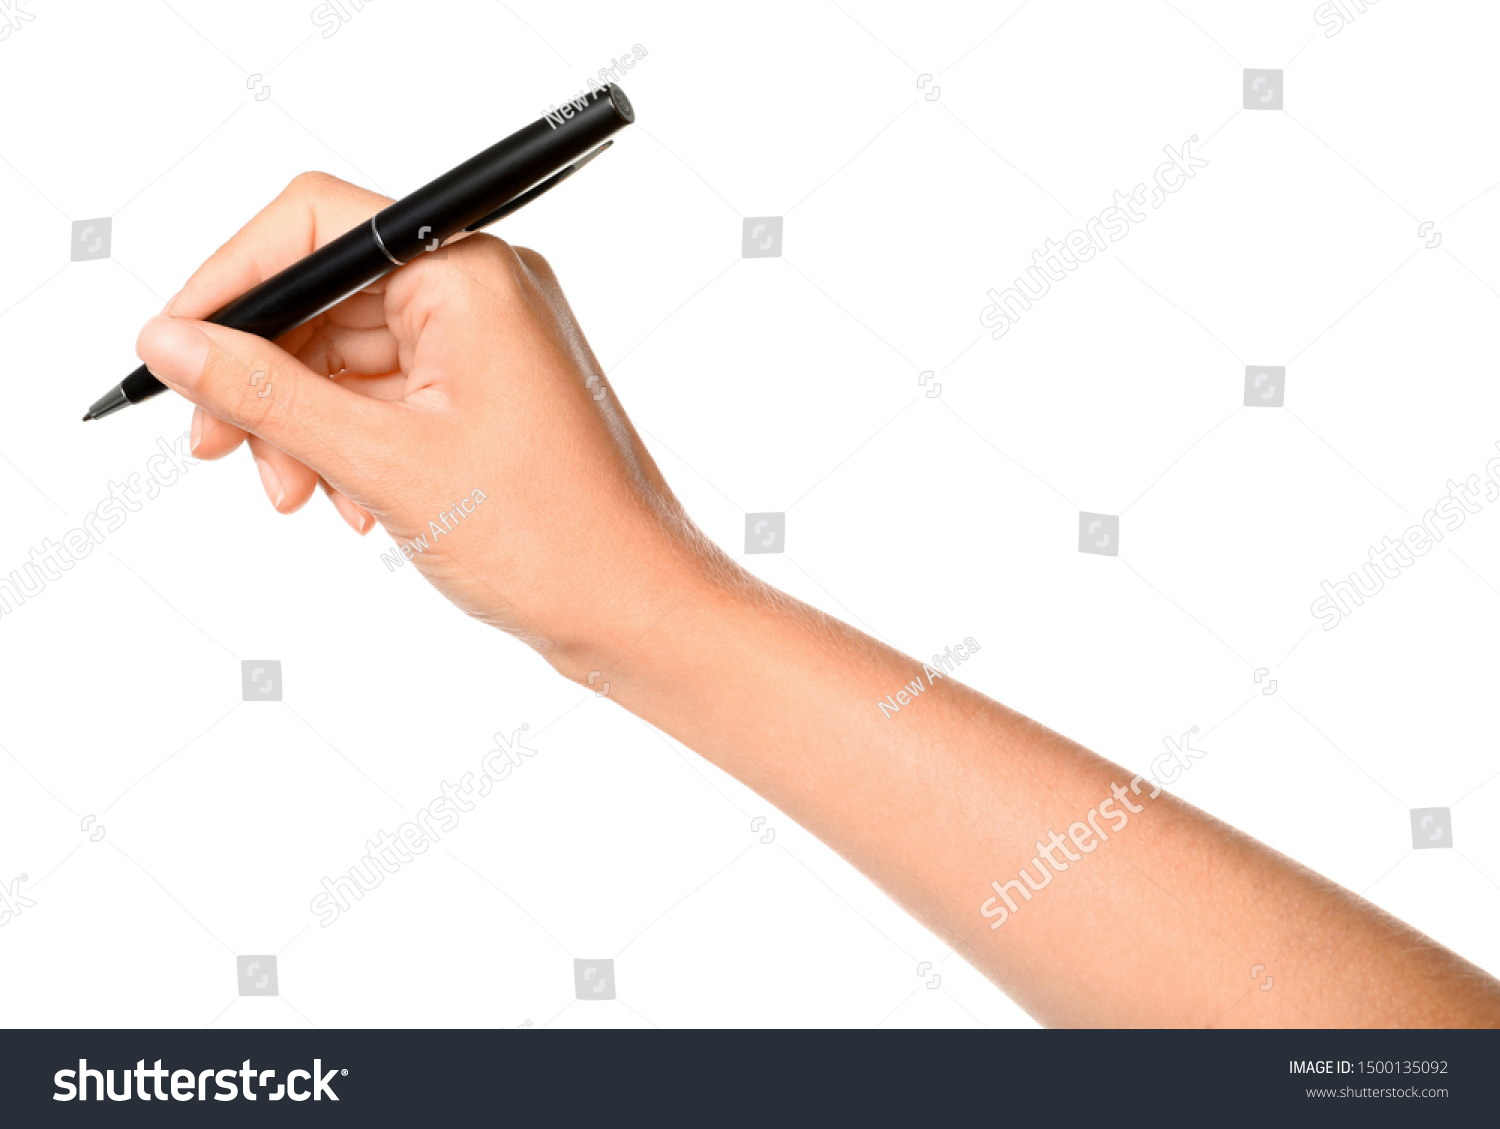 People pen. Рука держит ручку. Рисунок человек на аккунике держит ручку. Студентка держит ручку неправильно.